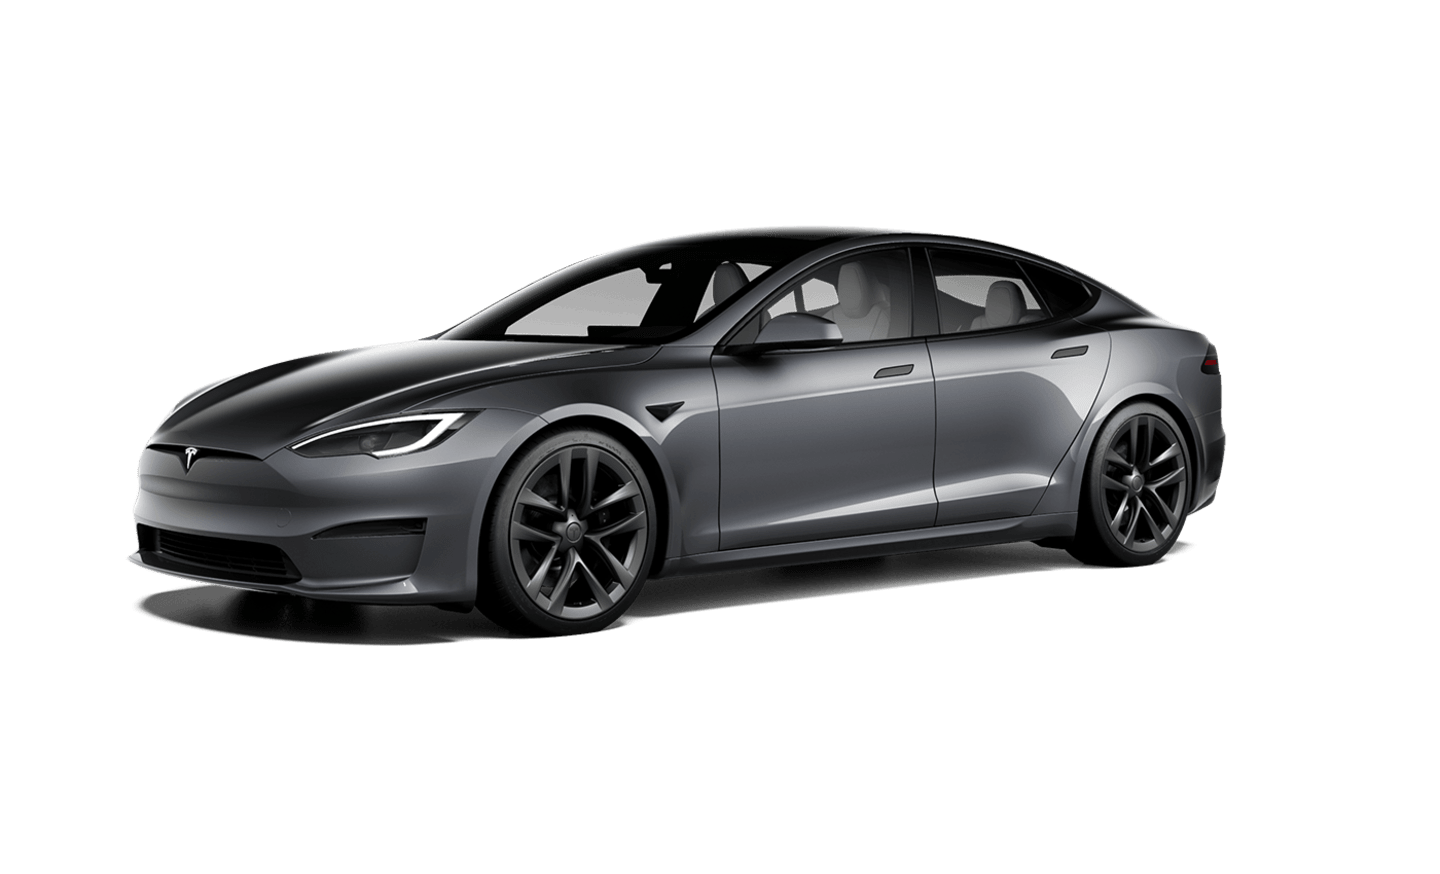 Opgewonden zijn convergentie achterstalligheid New & Used Electric Cars | Tesla